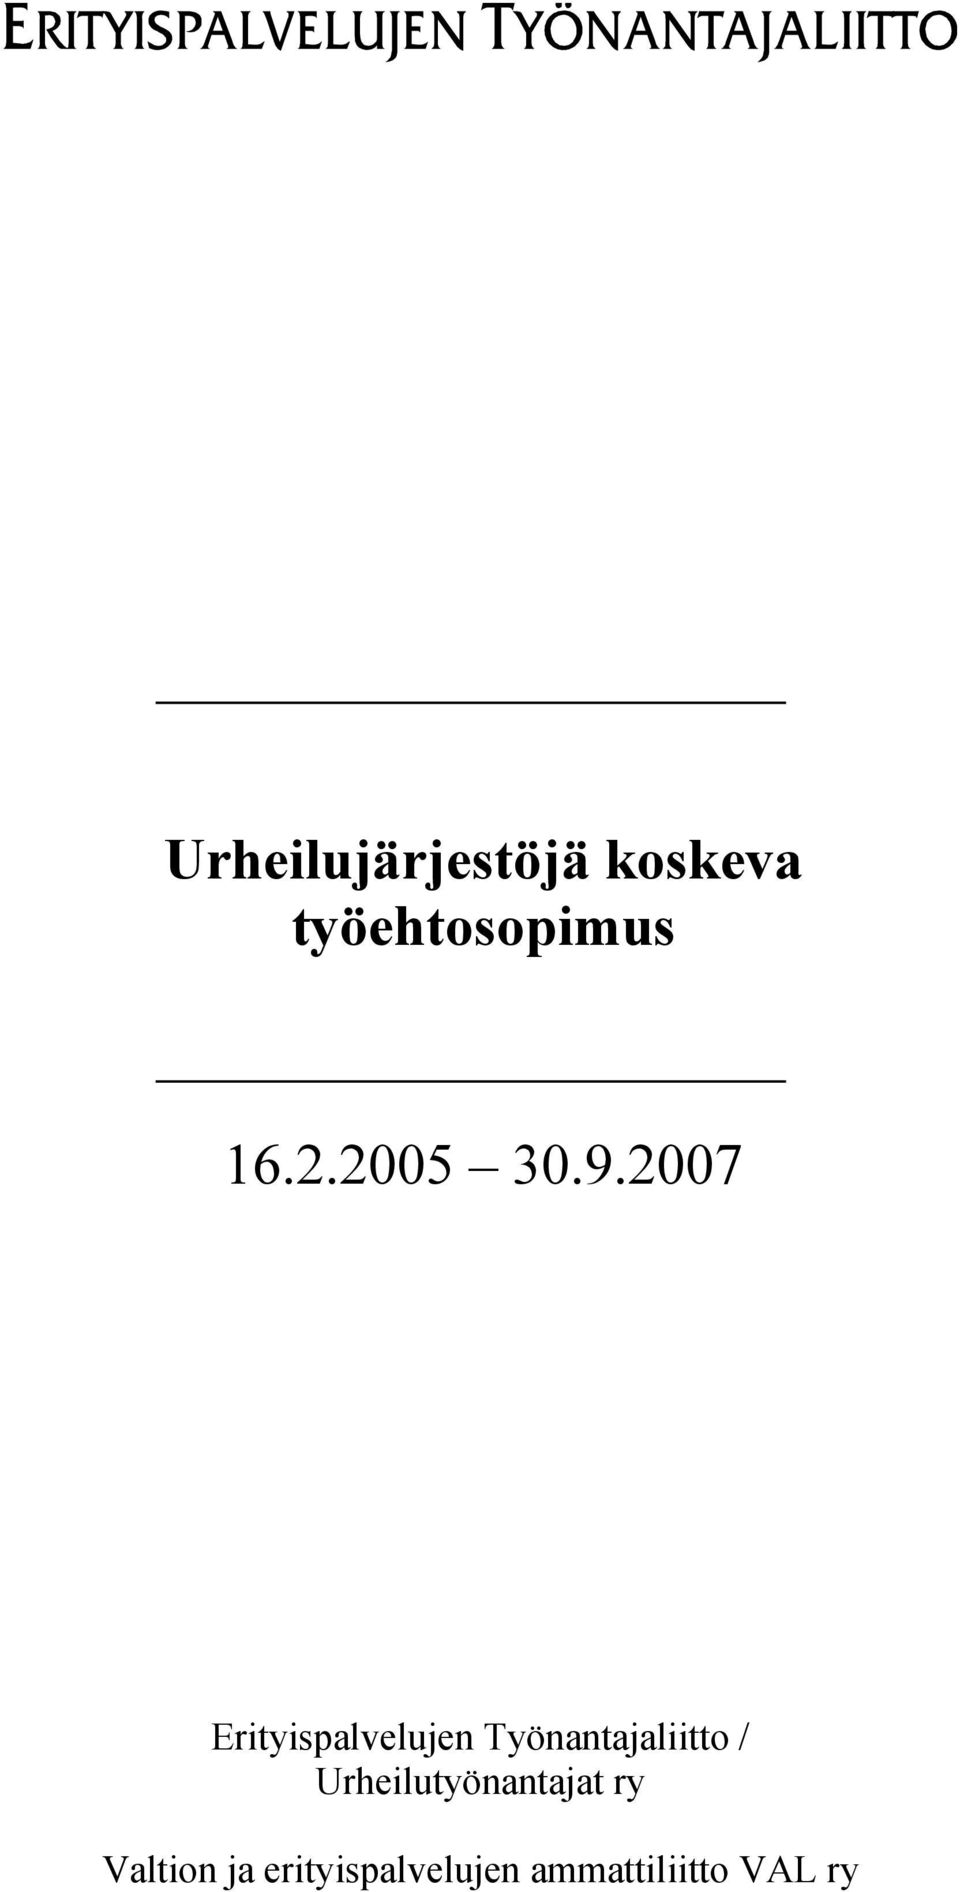 2007 Erityispalvelujen Työnantajaliitto /